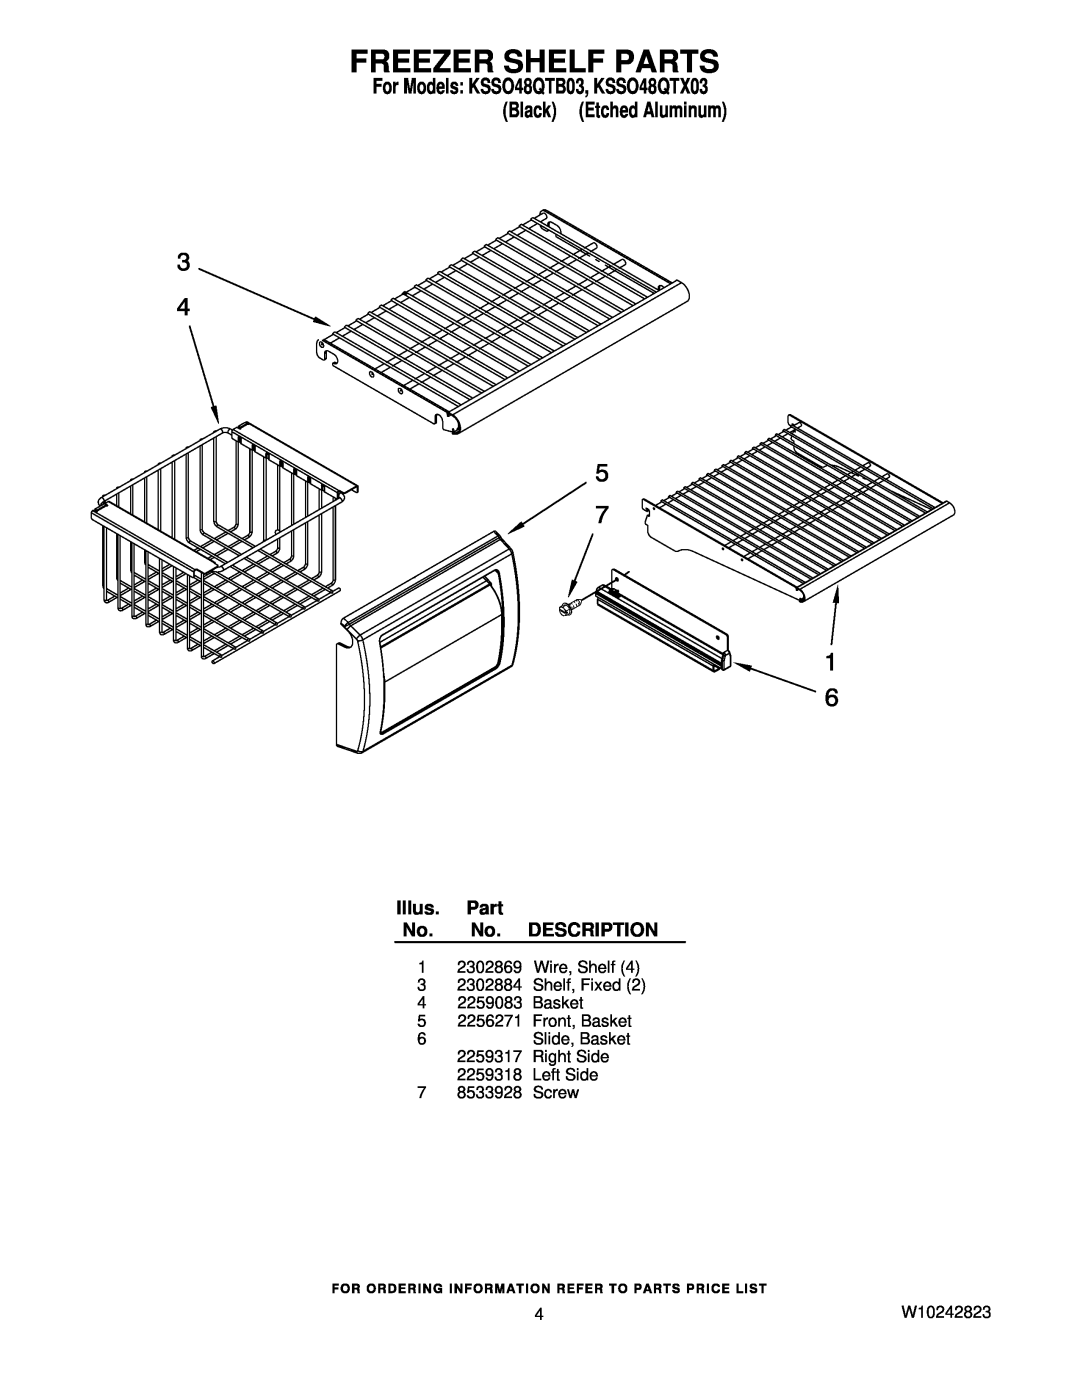 KitchenAid KSSO48QTX03 manual Freezer Shelf Parts, Illus. Part No. No. DESCRIPTION, Left Side 7 8533928 Screw, W10242823 